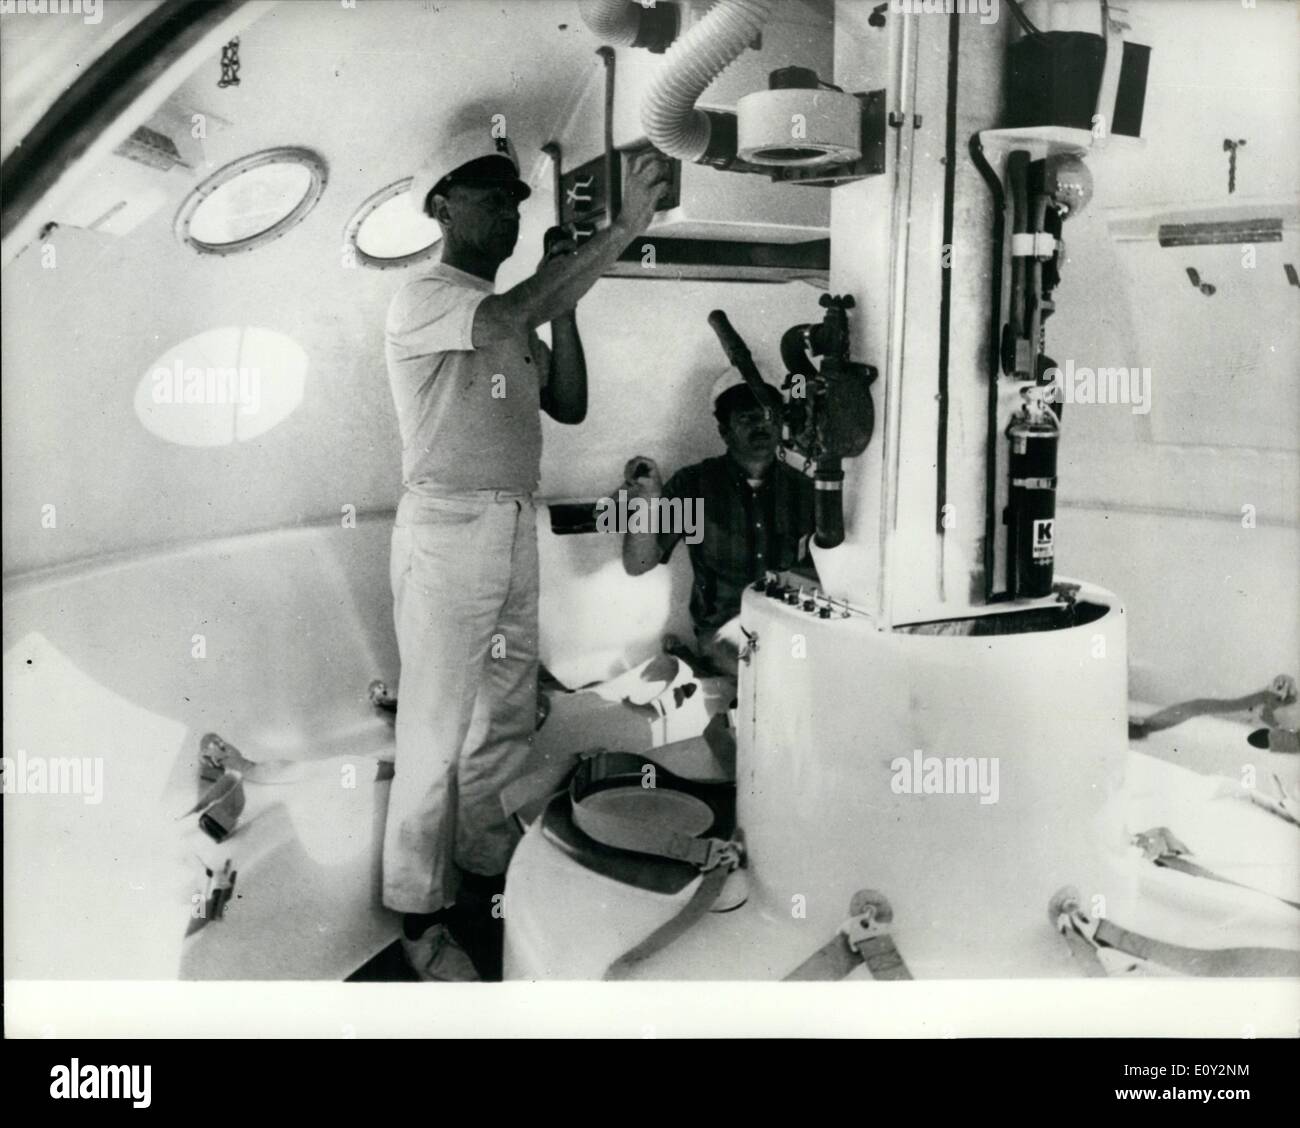 Giugno 06, 1968 - La sopravvivenza Brucker Capsule - un notevole progresso in materia di sicurezza in mare. La Brucker capsula di sopravvivenza è un nuovo punto di partenza per la salvaguardia della vita in mare., concepito per adempiere la sua missione dal momento del disastro fino al salvataggio dei suoi occupanti. Il 14-piedi di diametro, di forma lenticolare a forma di capsula è fabbricata di un ignifugo, in fibra di vetro impregnata con un radar di materiale riflettente, e dispone di un centro di acciaio colonna per una maggiore resistenza Foto Stock